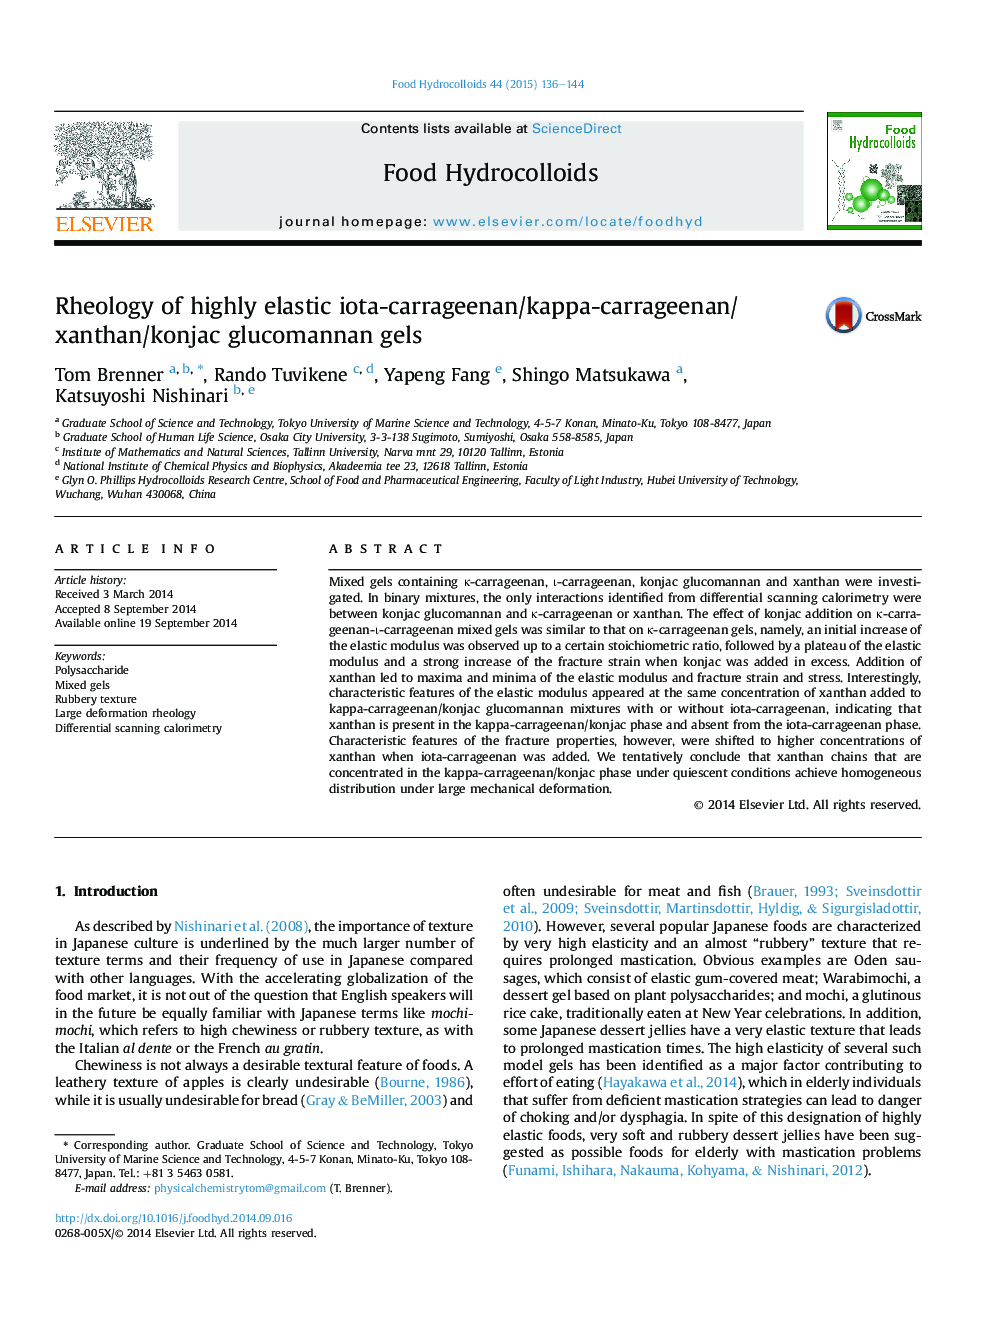 Rheology of highly elastic iota-carrageenan/kappa-carrageenan/xanthan/konjac glucomannan gels